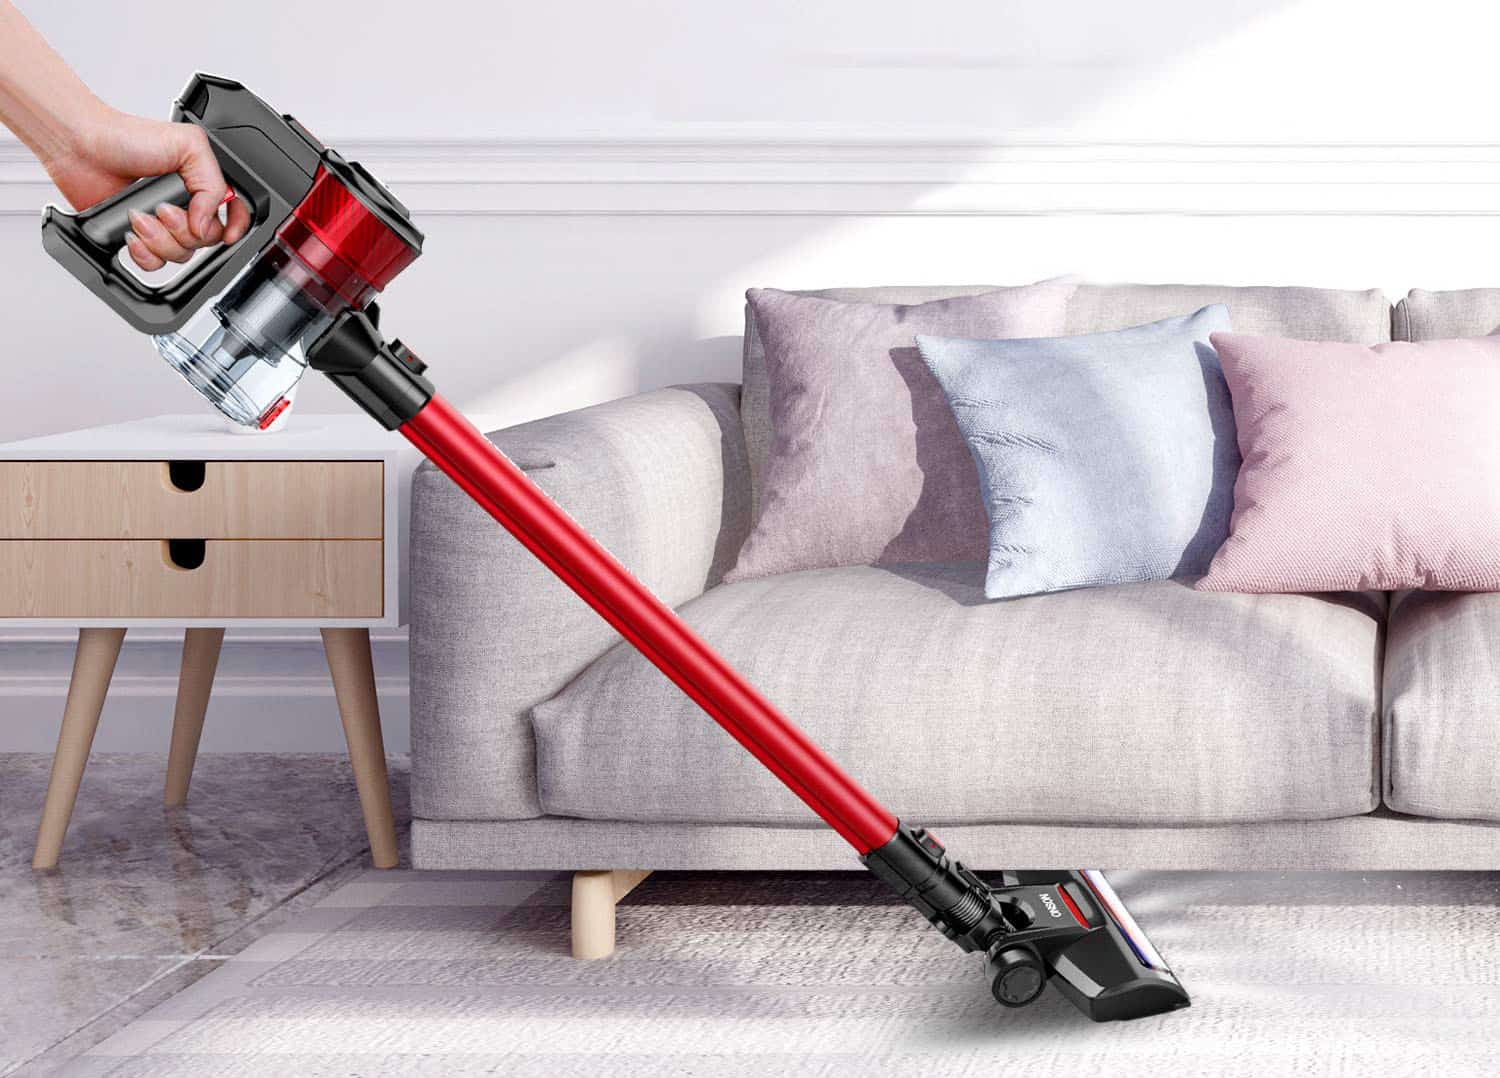 Stick Vacuum Cleaner